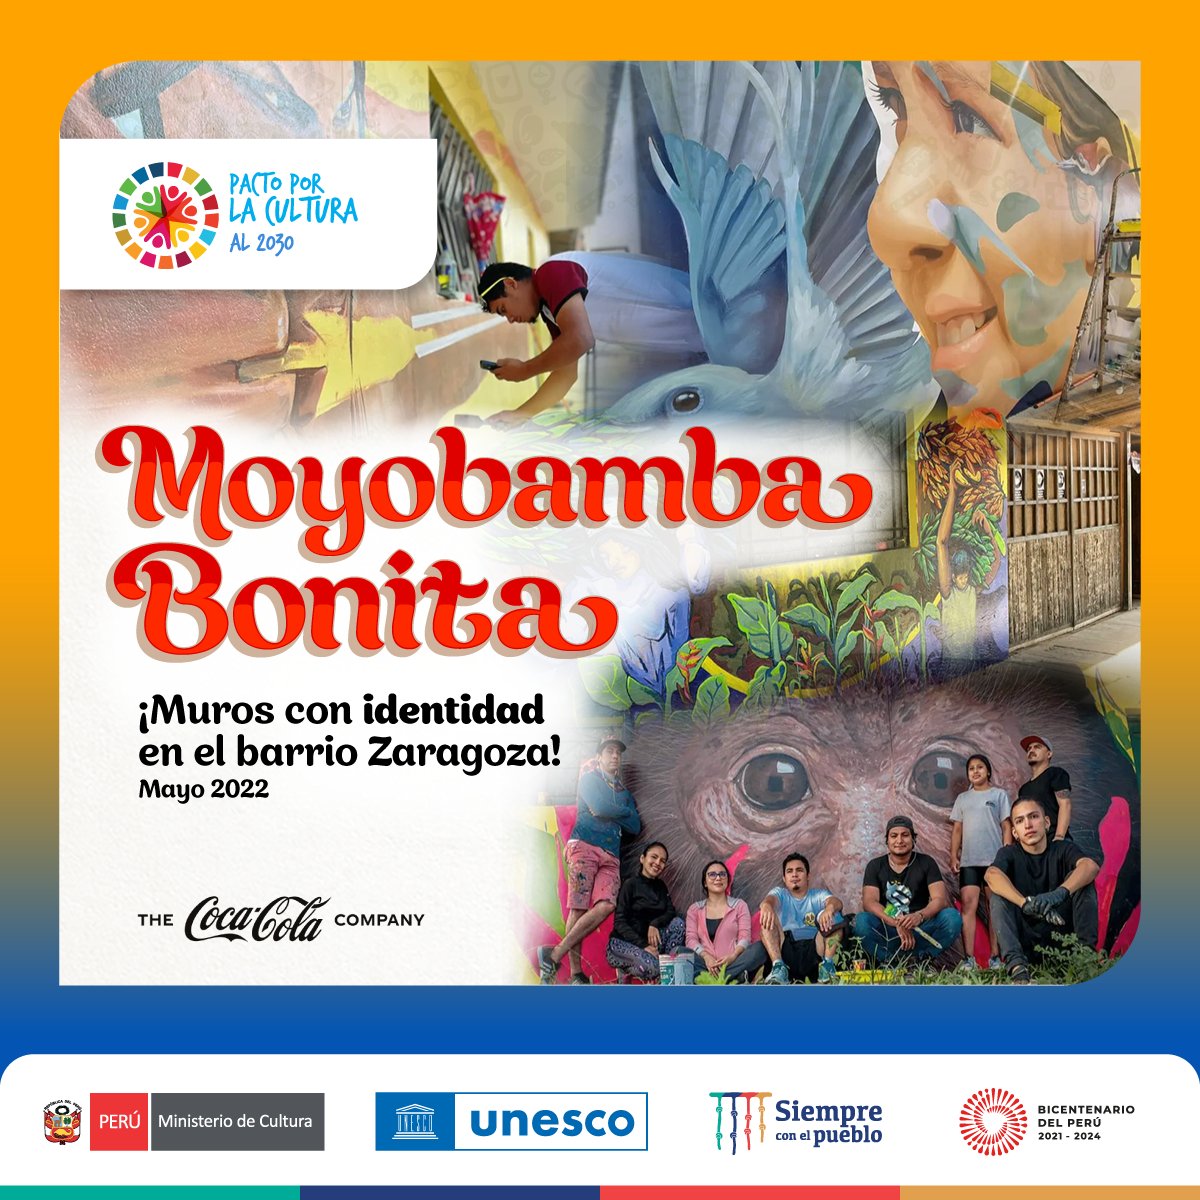 👩🏻‍🎨👨🏻‍🎨 Tras la intervención de artistas locales, el barrio de Zaragoza se integrará al circuito cultural de Moyobamba. El proyecto fue posible gracias a @CocaColaCo, @UnescoPeru y el Ministerio de Cultura, como parte del #PactoPorLaCultura2030. Conoce más: pactoporlacultura.org